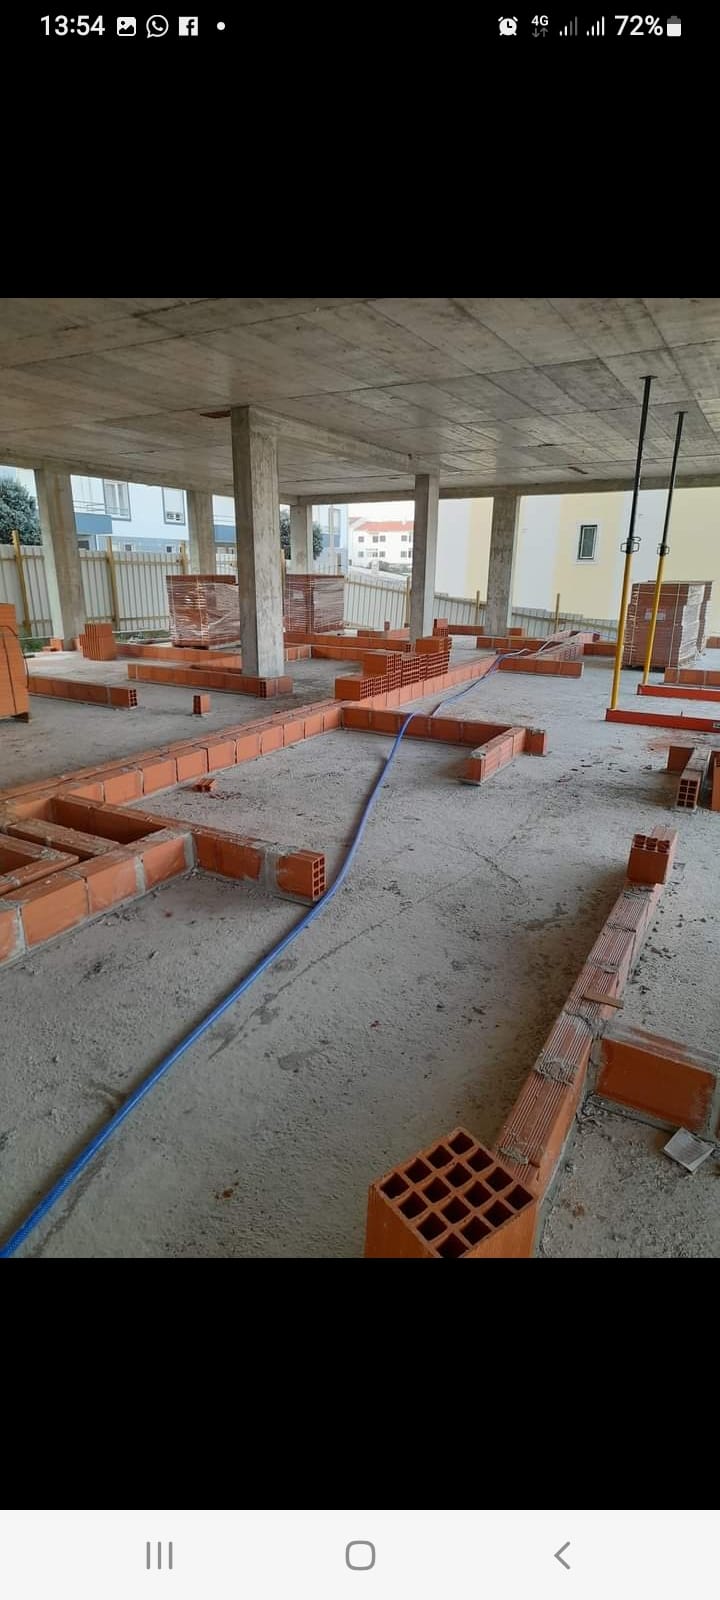 XAVIER REMODELAÇÕES - Torres Vedras - Remodelação da Casa